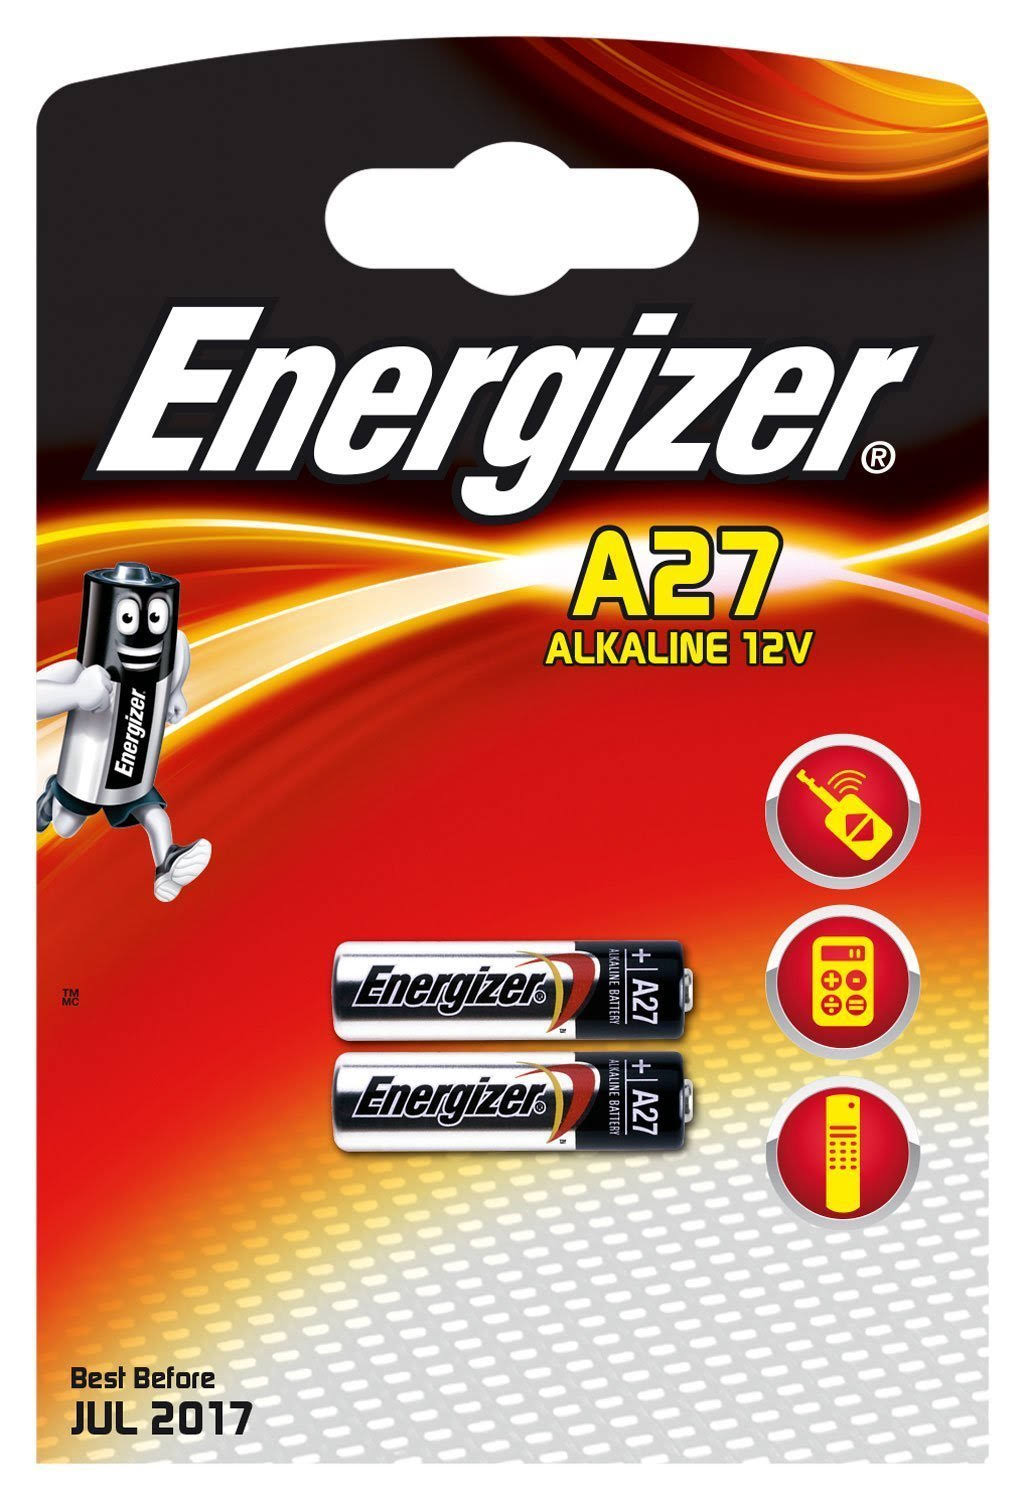 Energizer A27 Battery - 12V